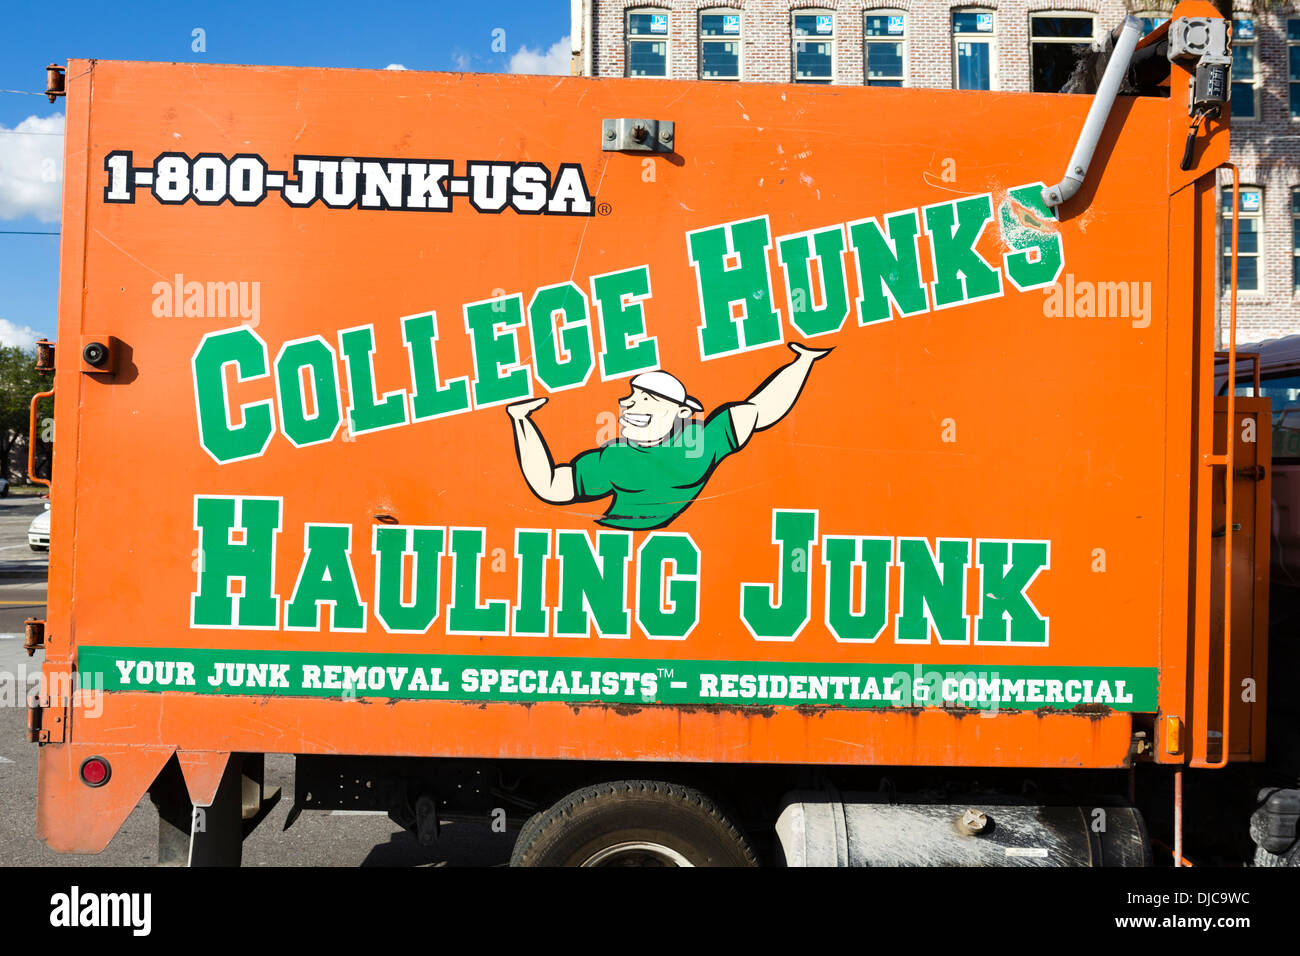 Un distacco carrello per 'College Hunks, alaggio Junk', Ybor City, Tampa, Florida, Stati Uniti d'America Foto Stock